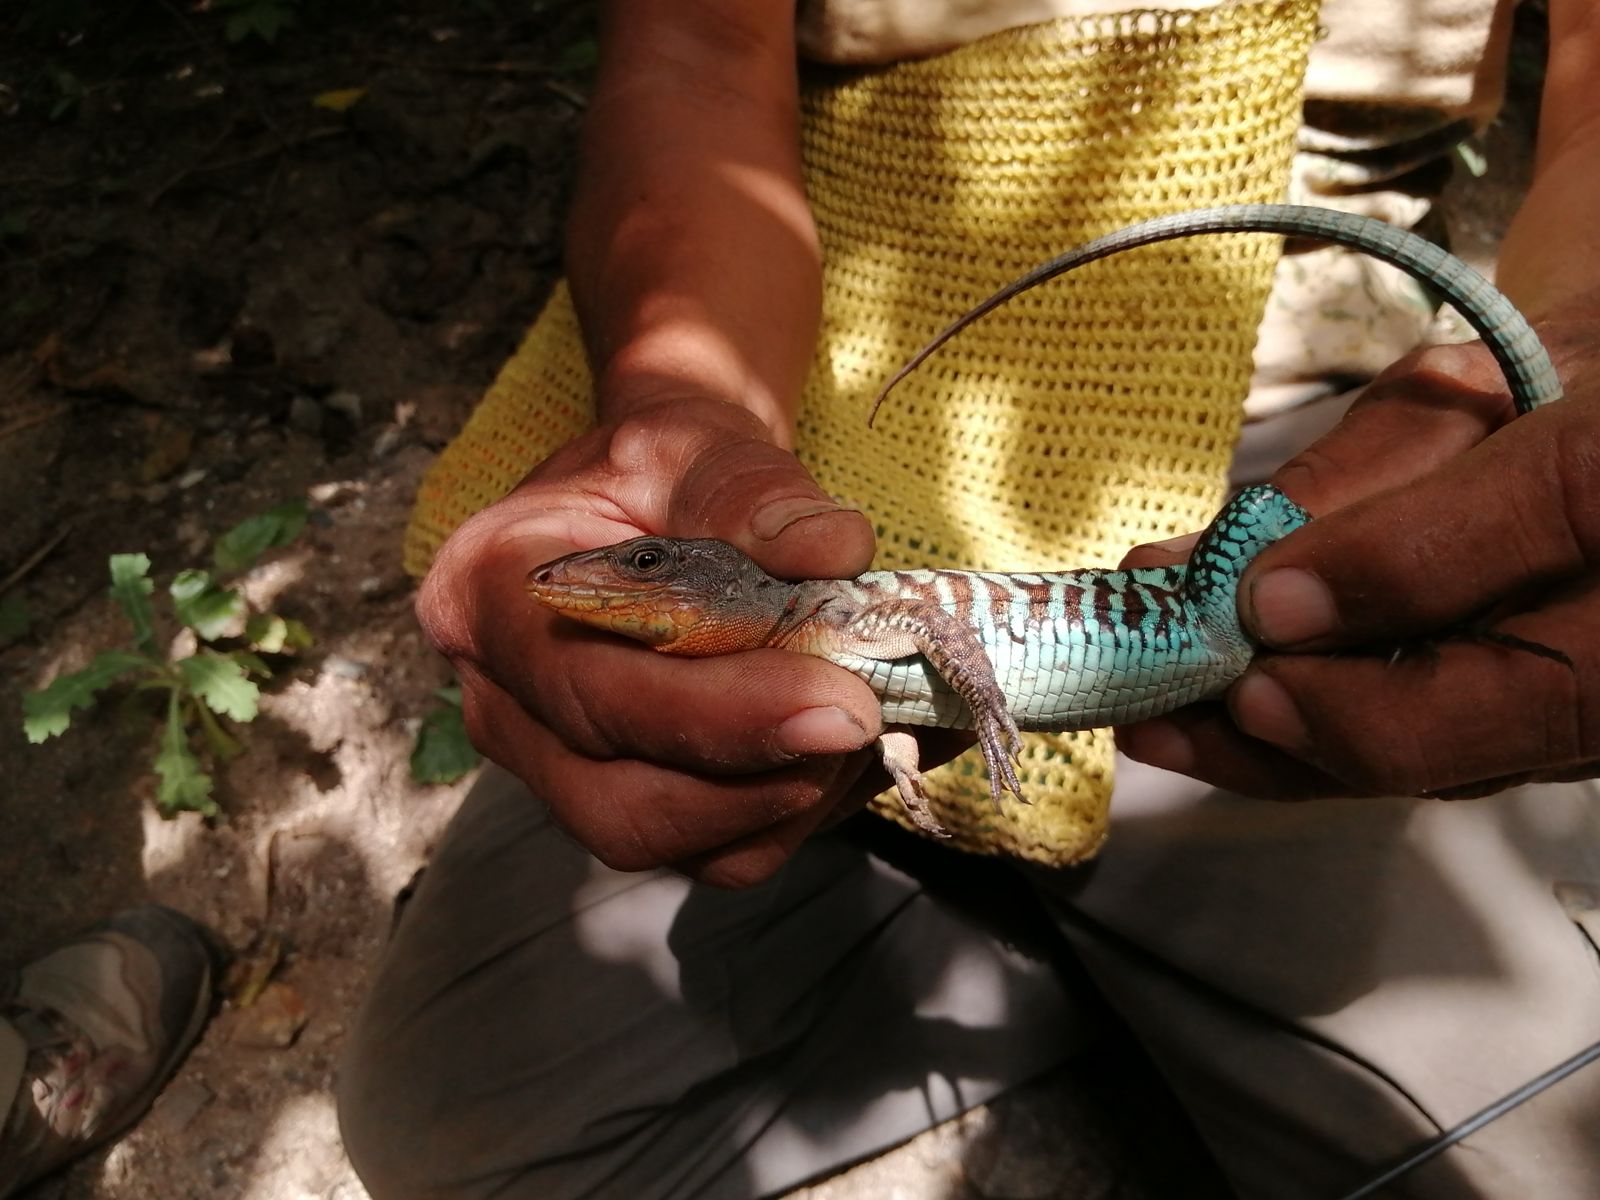 Unique-Aspidoscelis-motaguae-Lizard-of-Mesoamerica